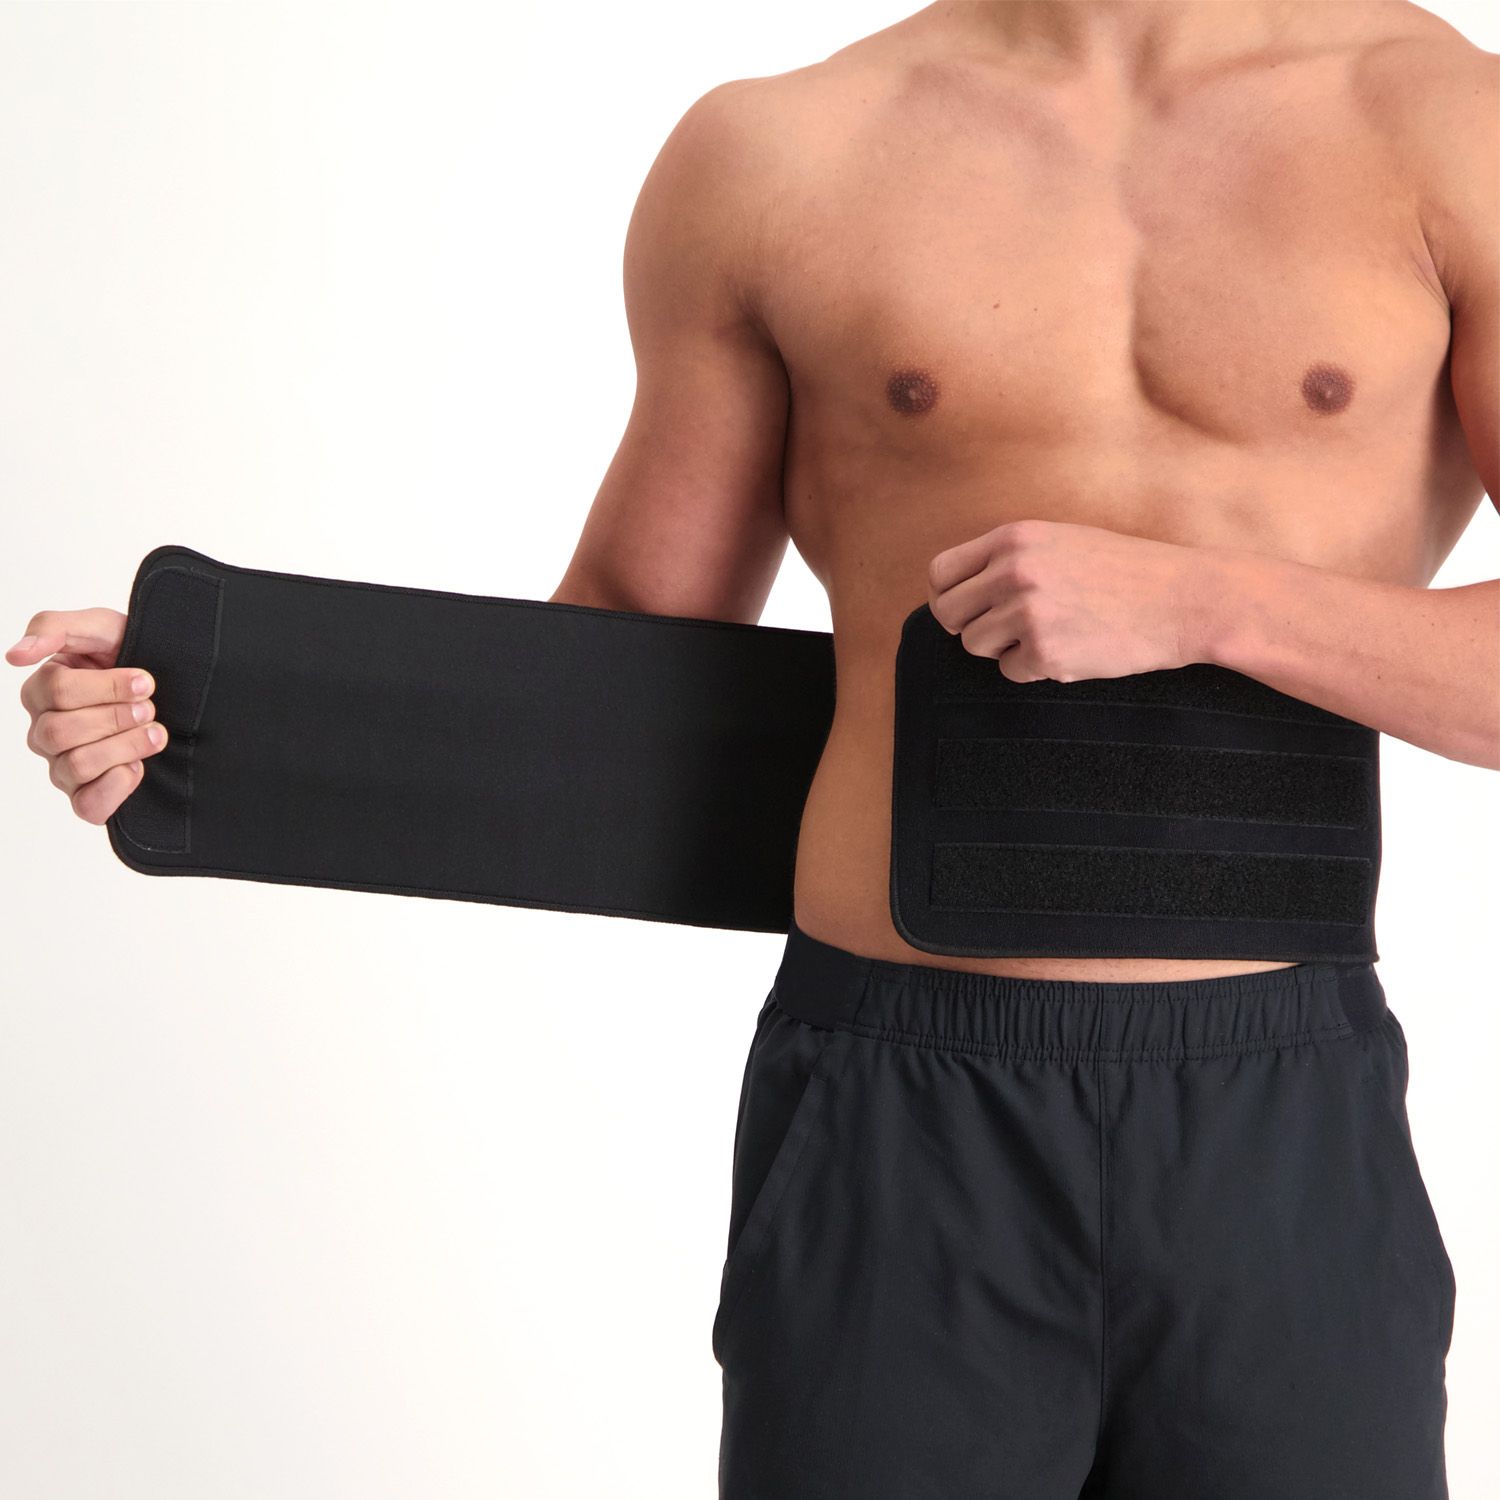 Dunimed Rückenbandage ohne Federstahlstreben anziehen